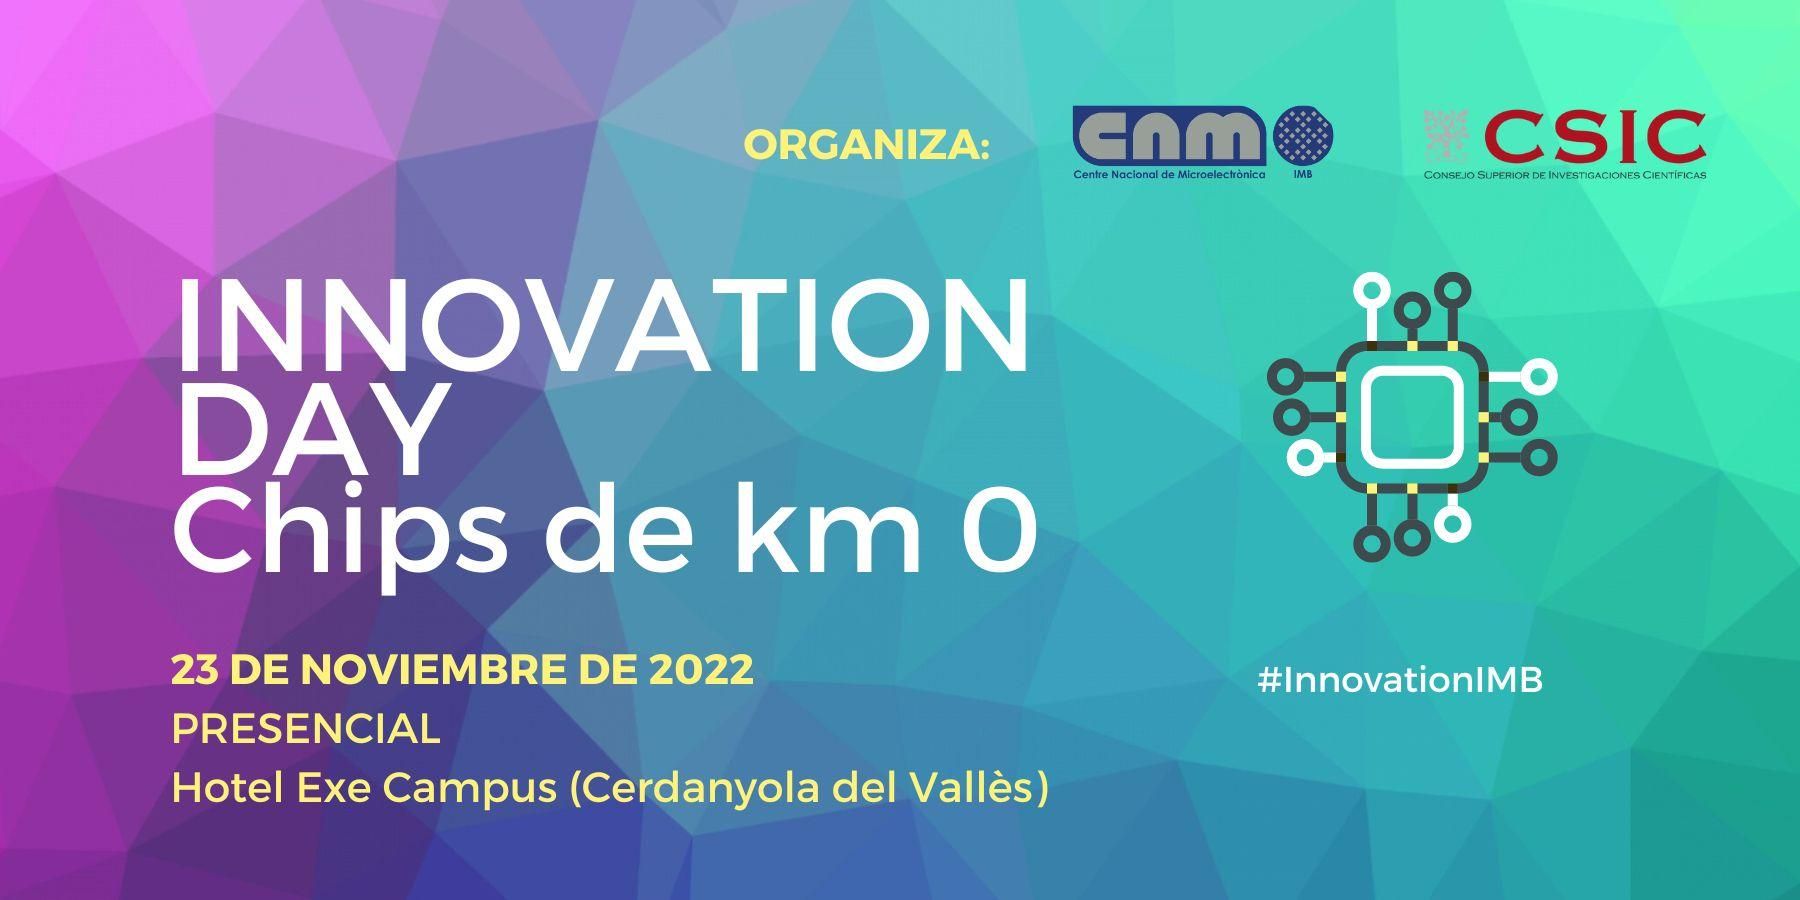 I Innovation Day Chips de km 0